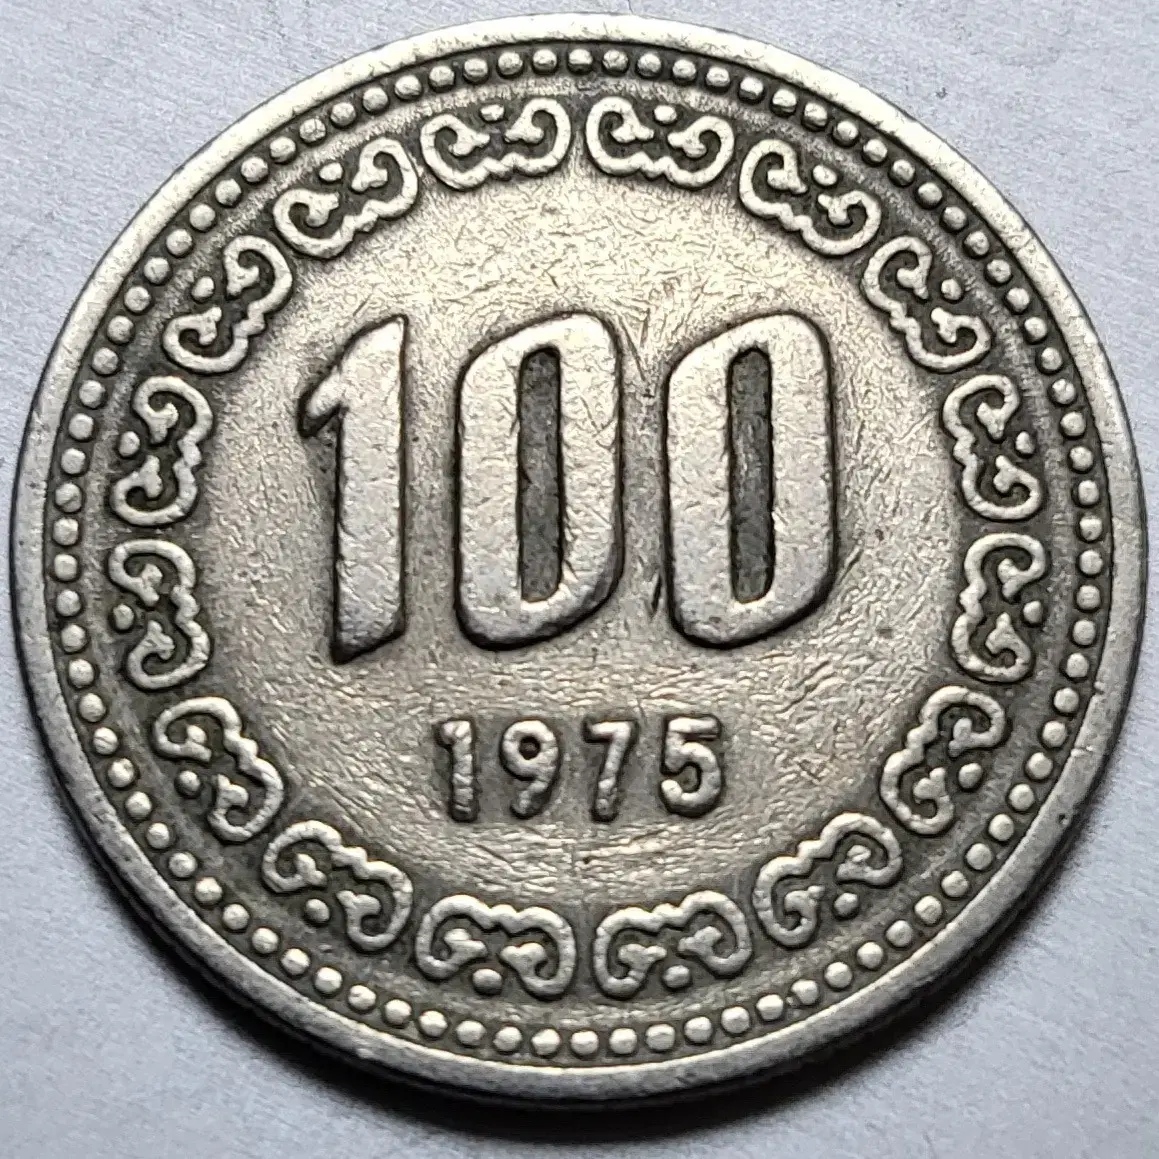 100 원 가격 1973 년 동전 희귀년도